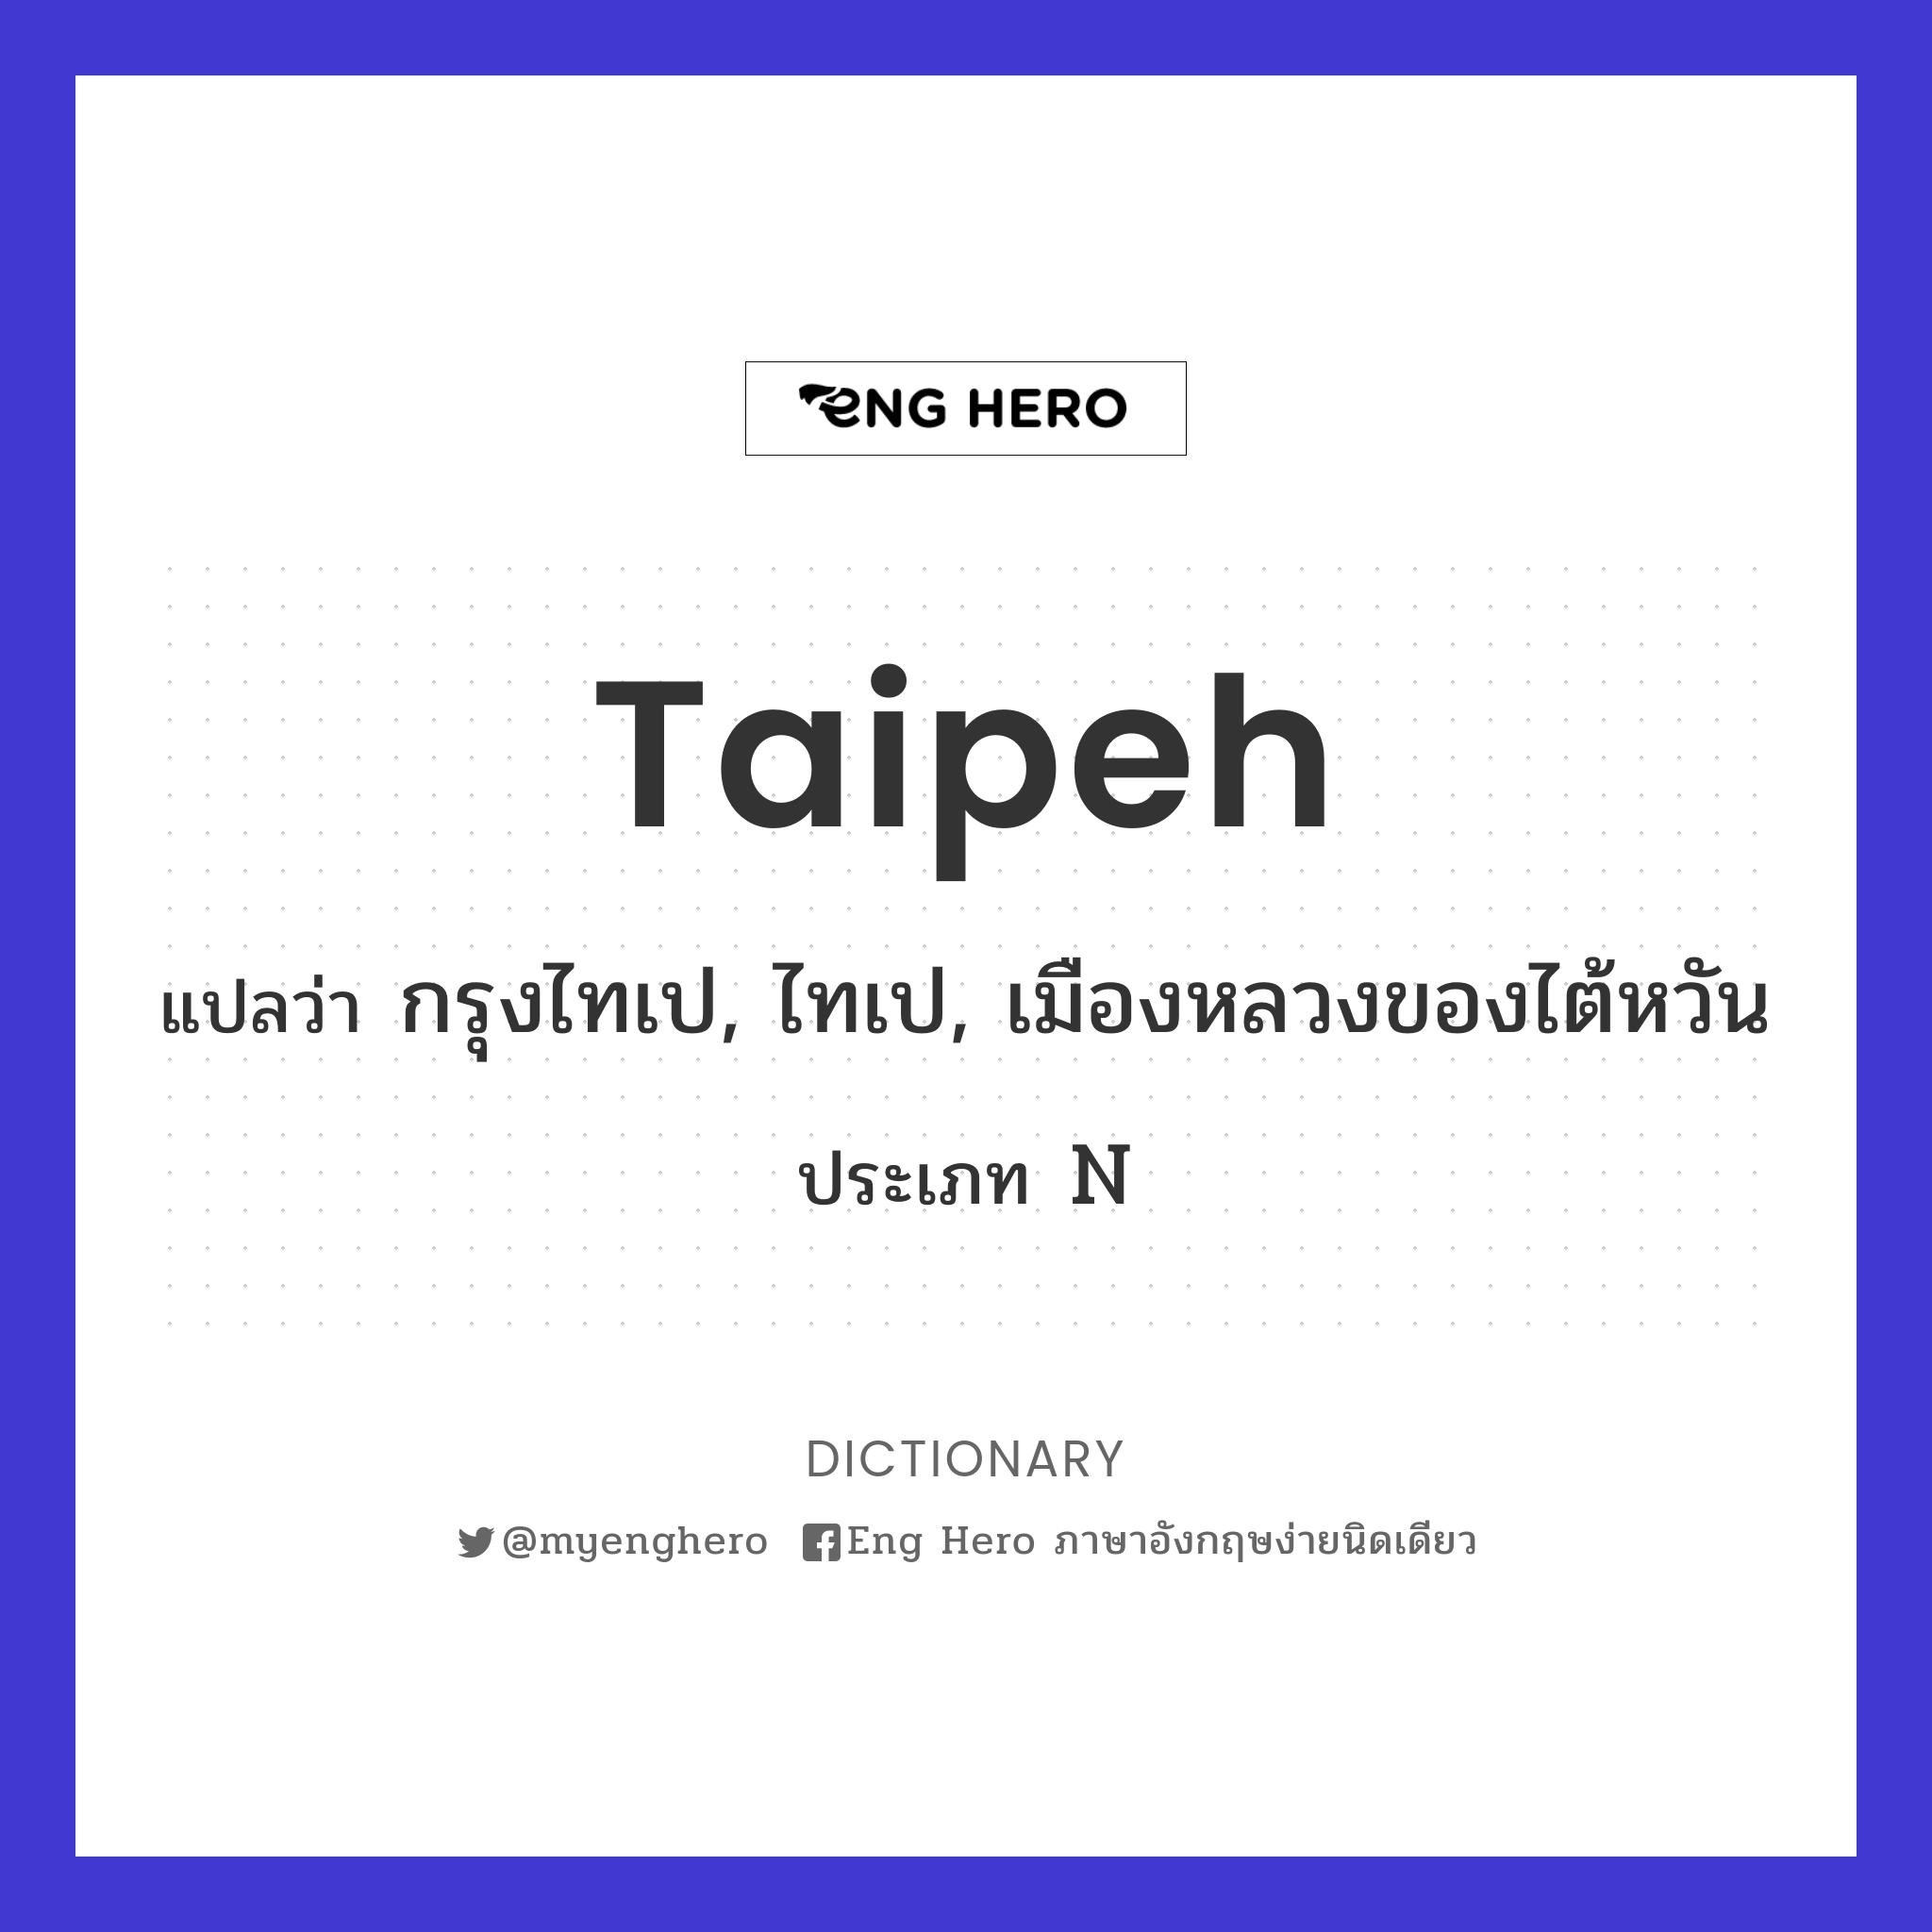 Taipeh